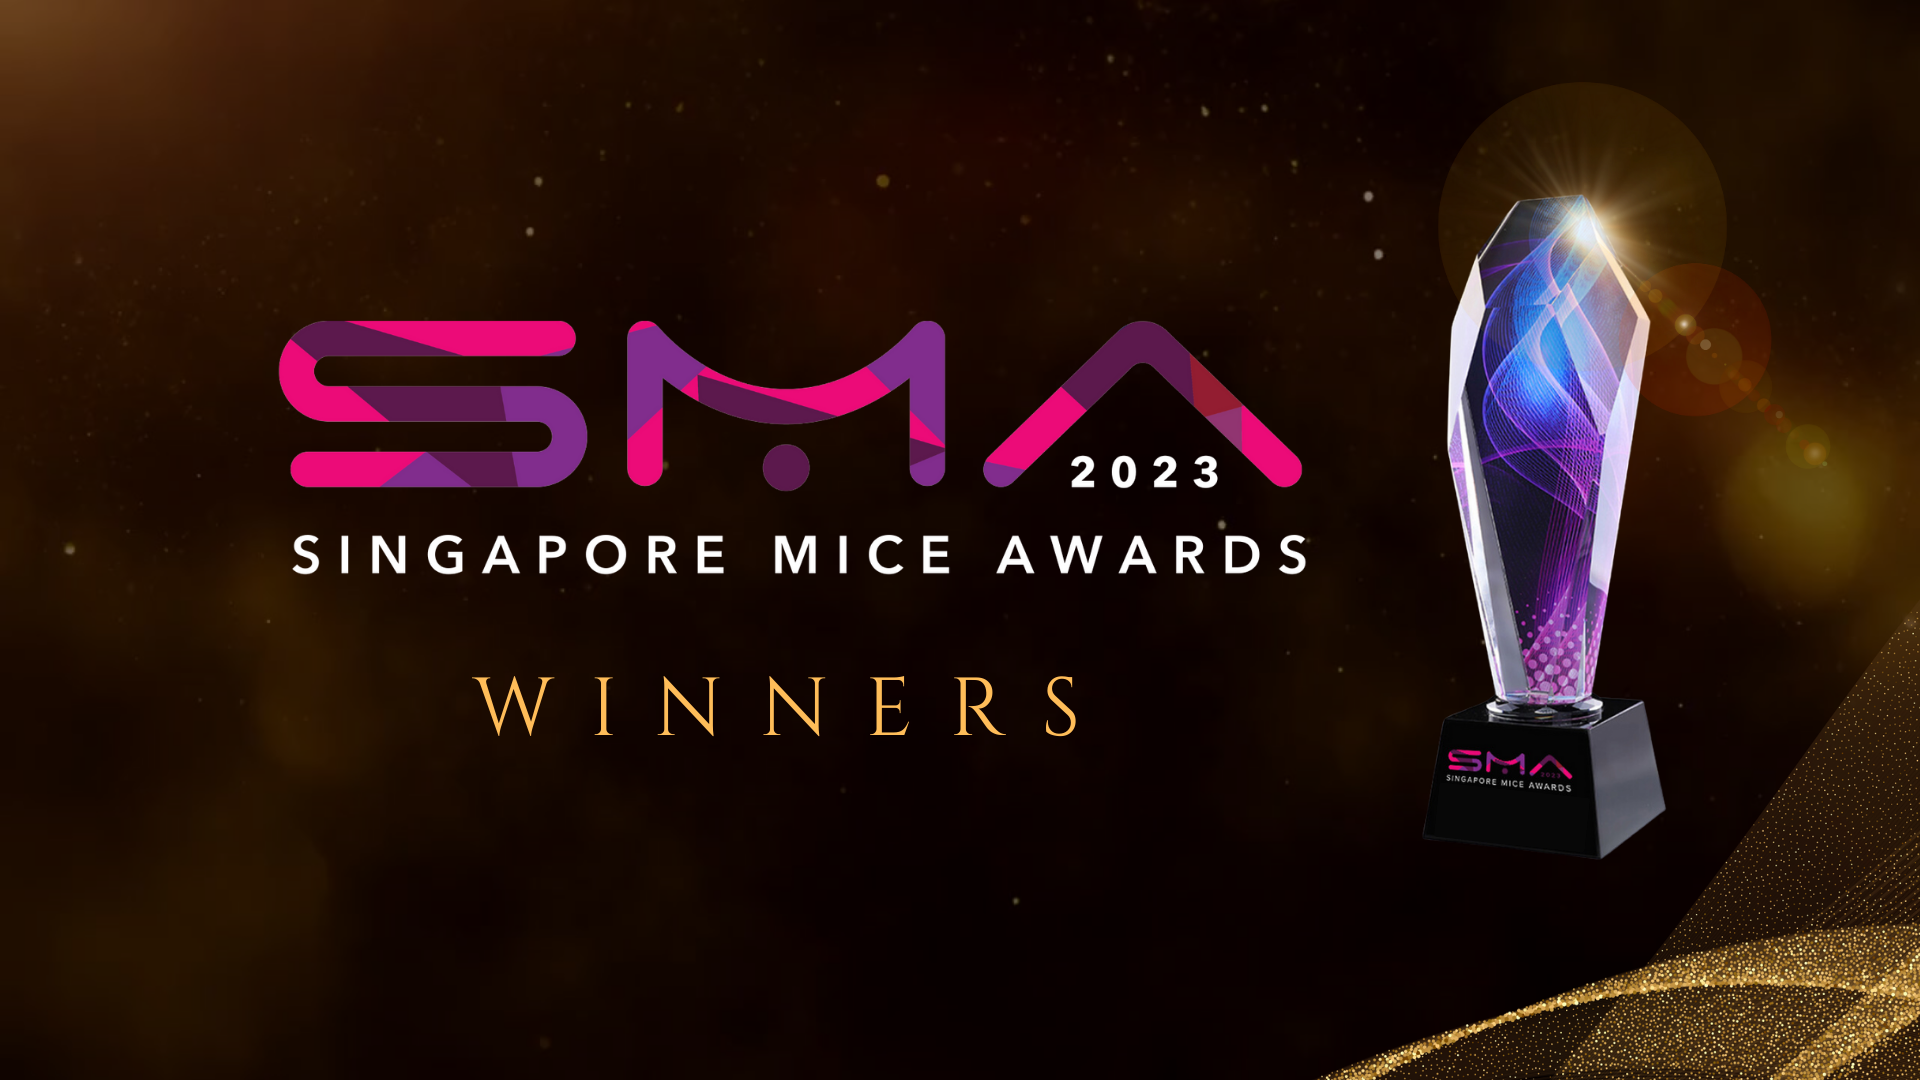 Winners of Singapore MICE Awards 2023